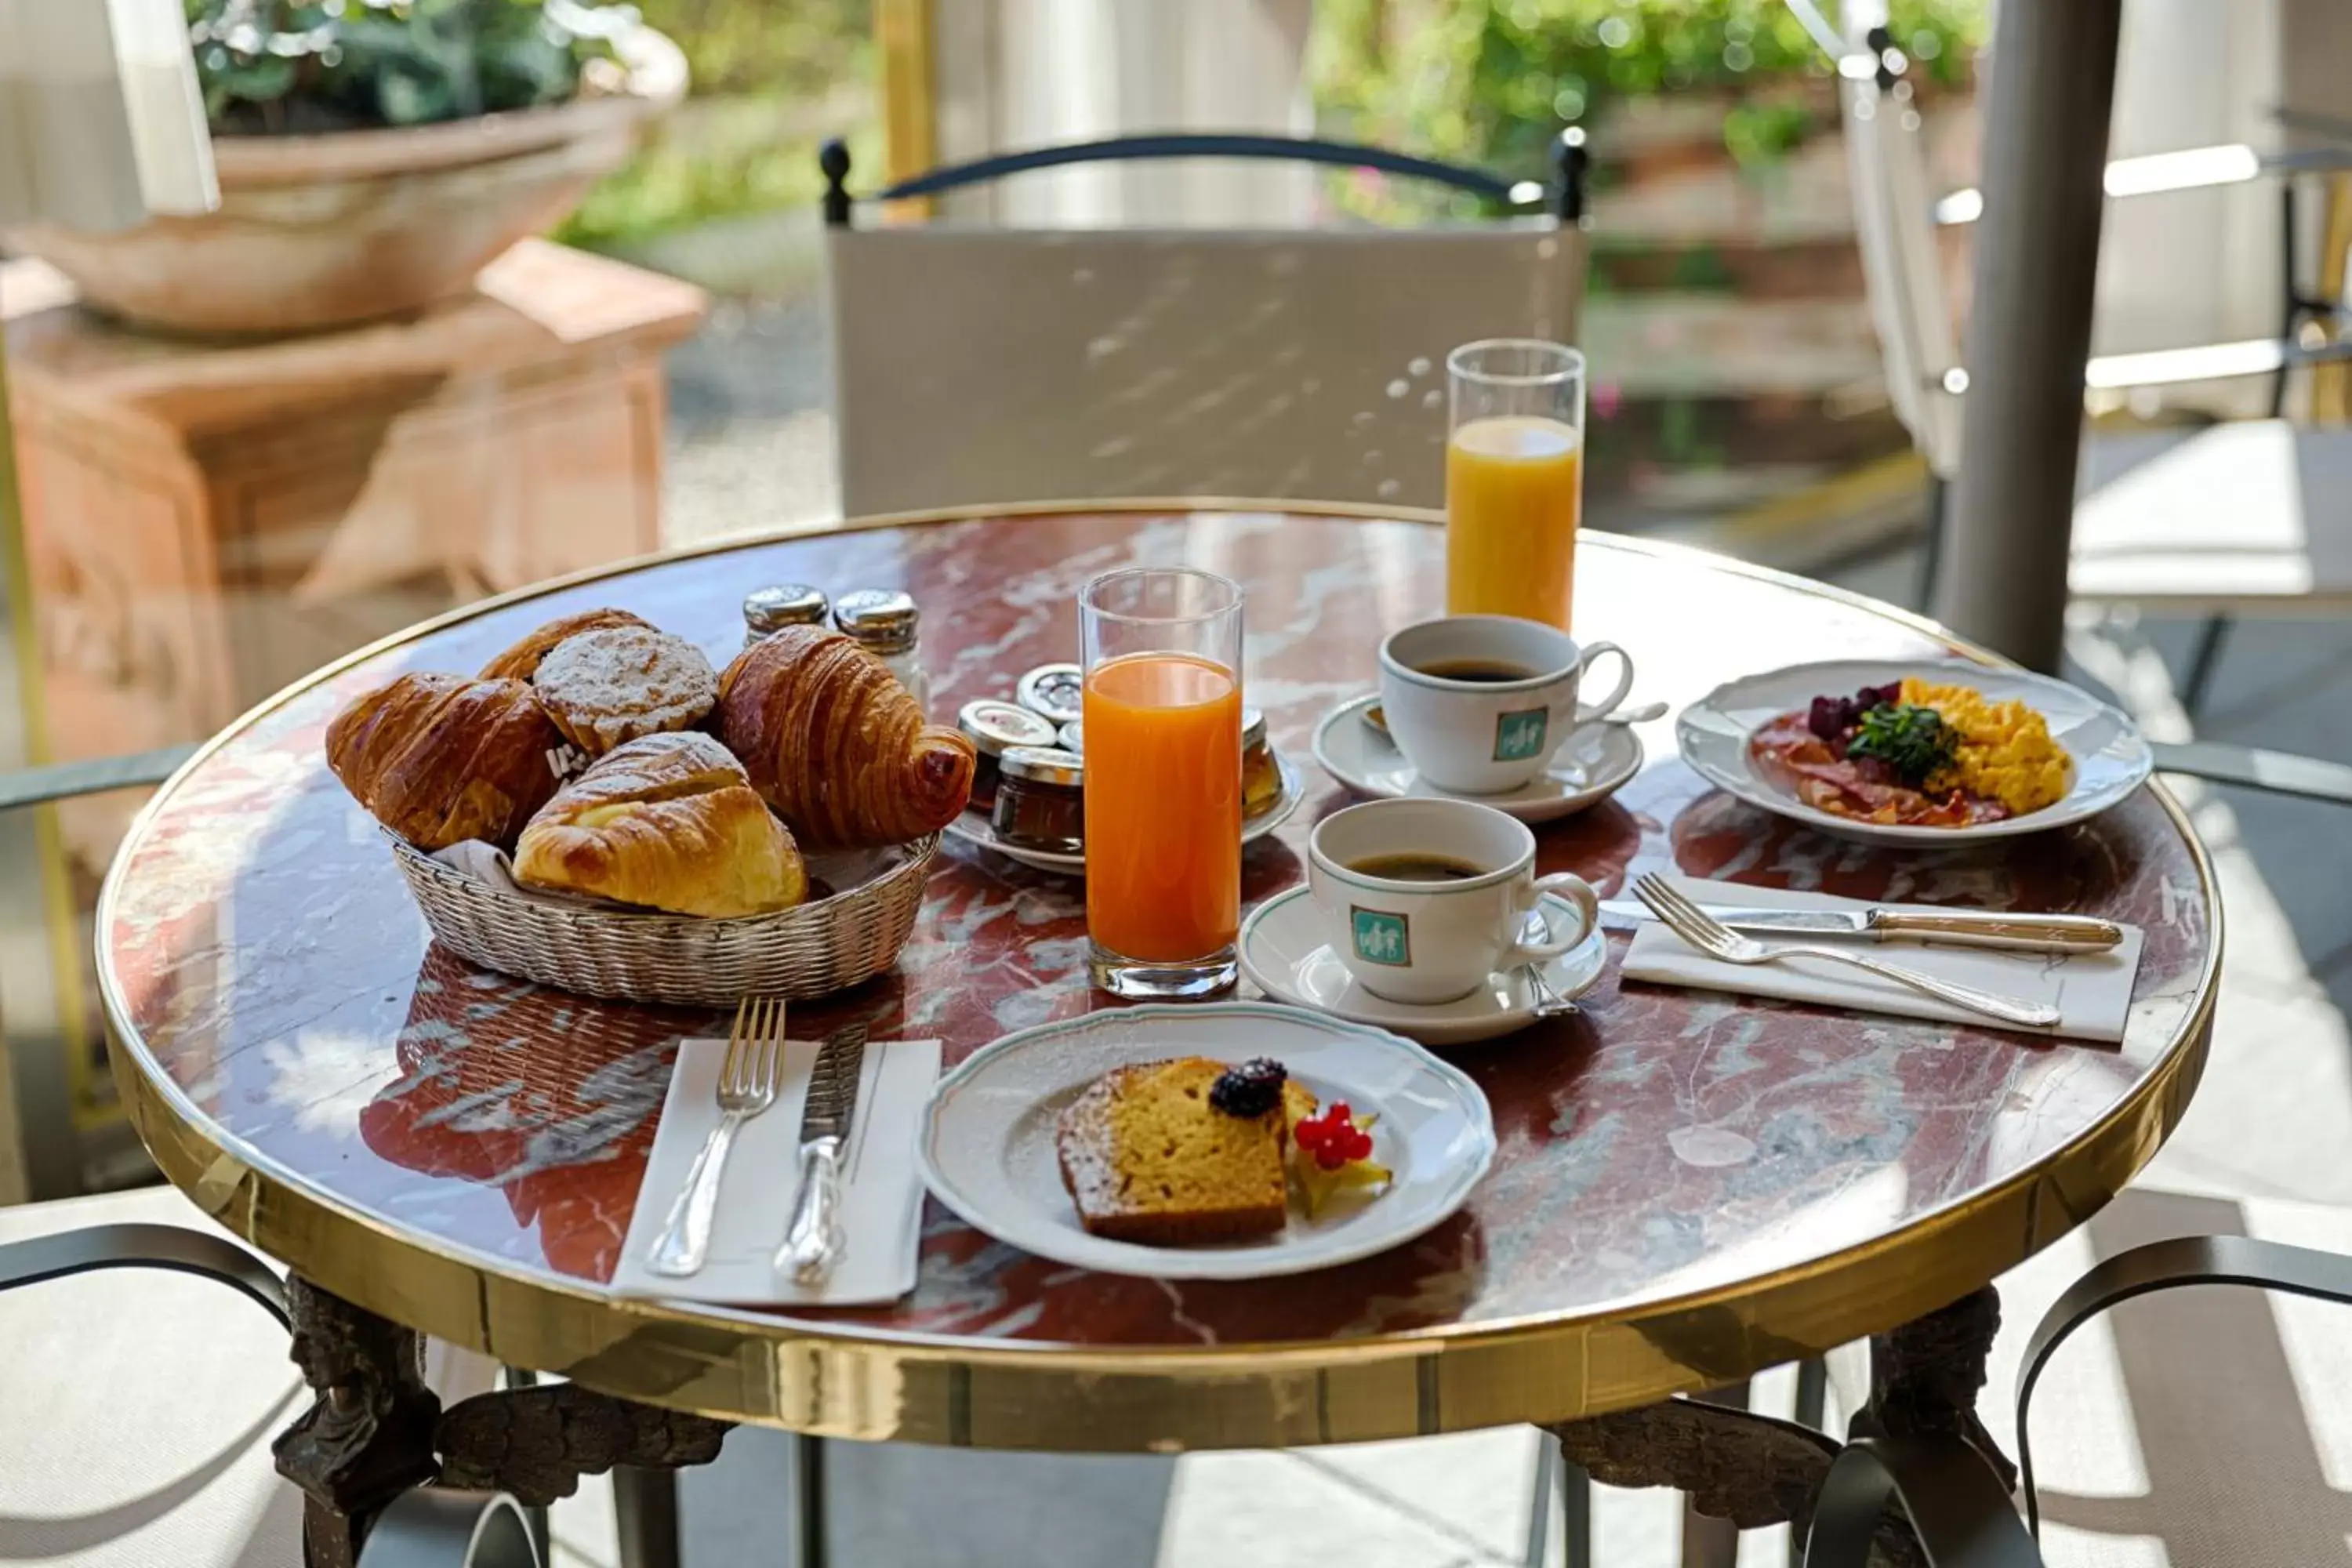 Buffet breakfast in Villa Olmi Firenze